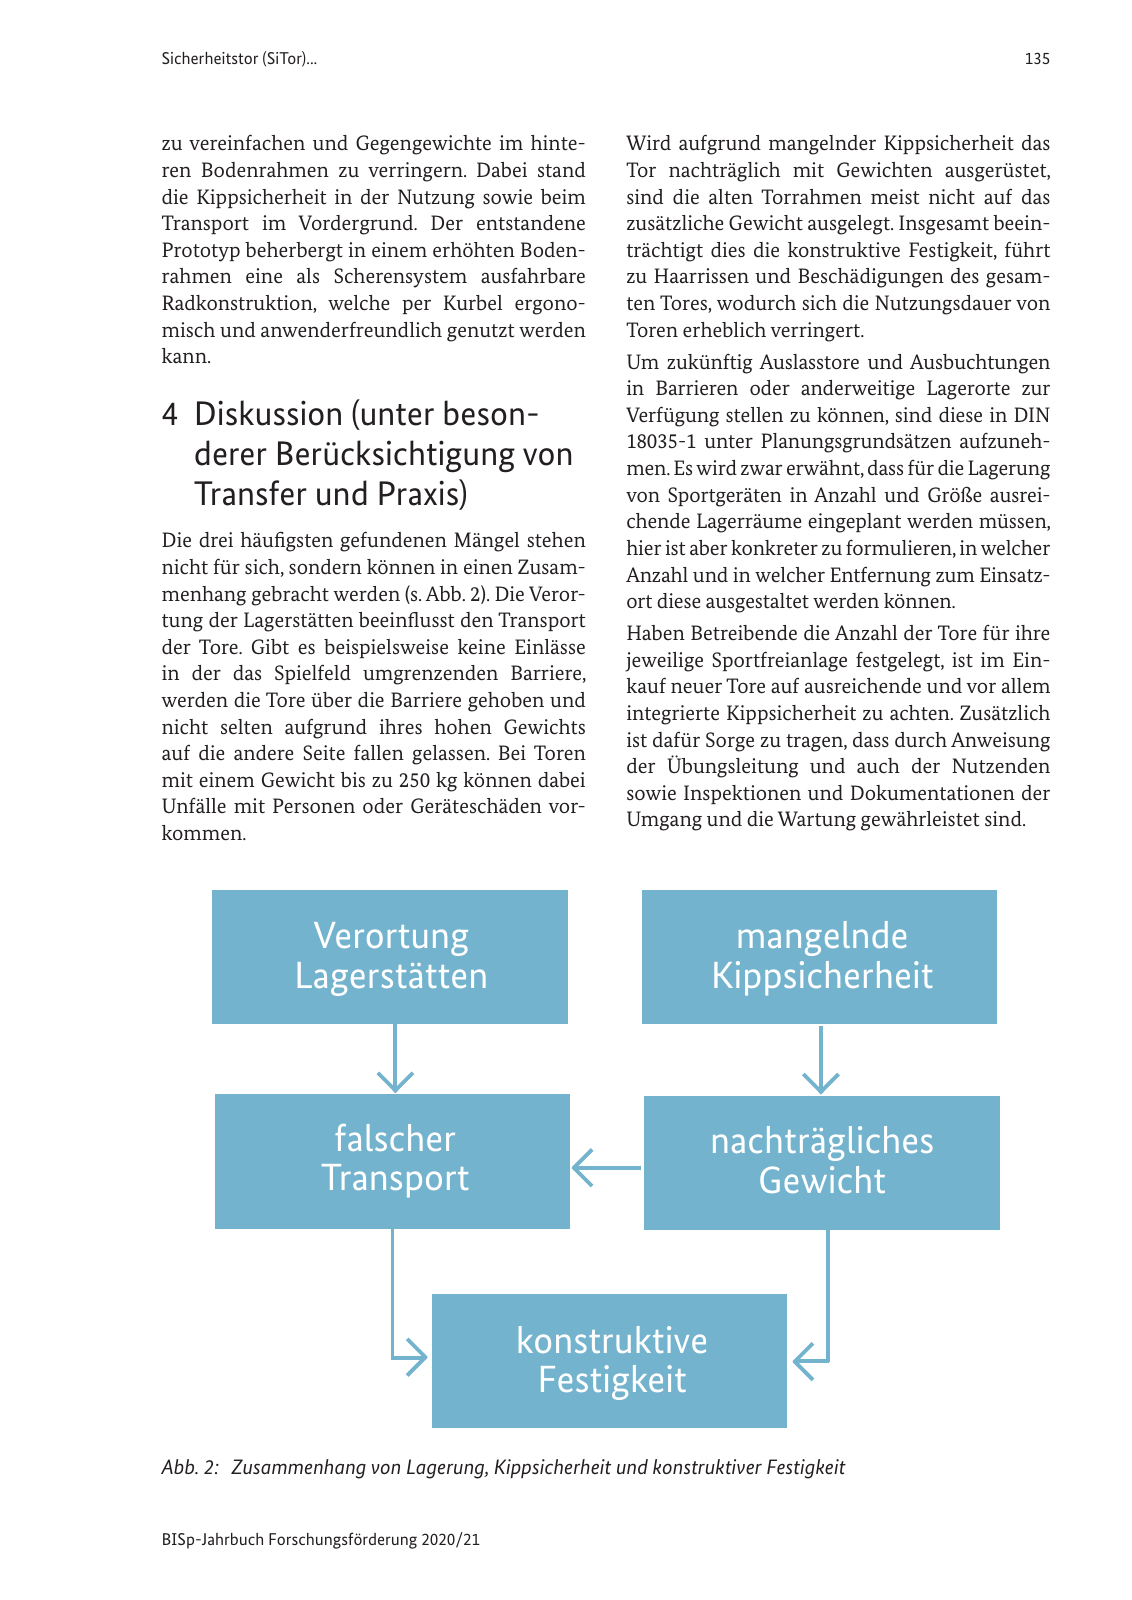 Vorschau BISp-Jahrbuch 2020/21 Seite 137